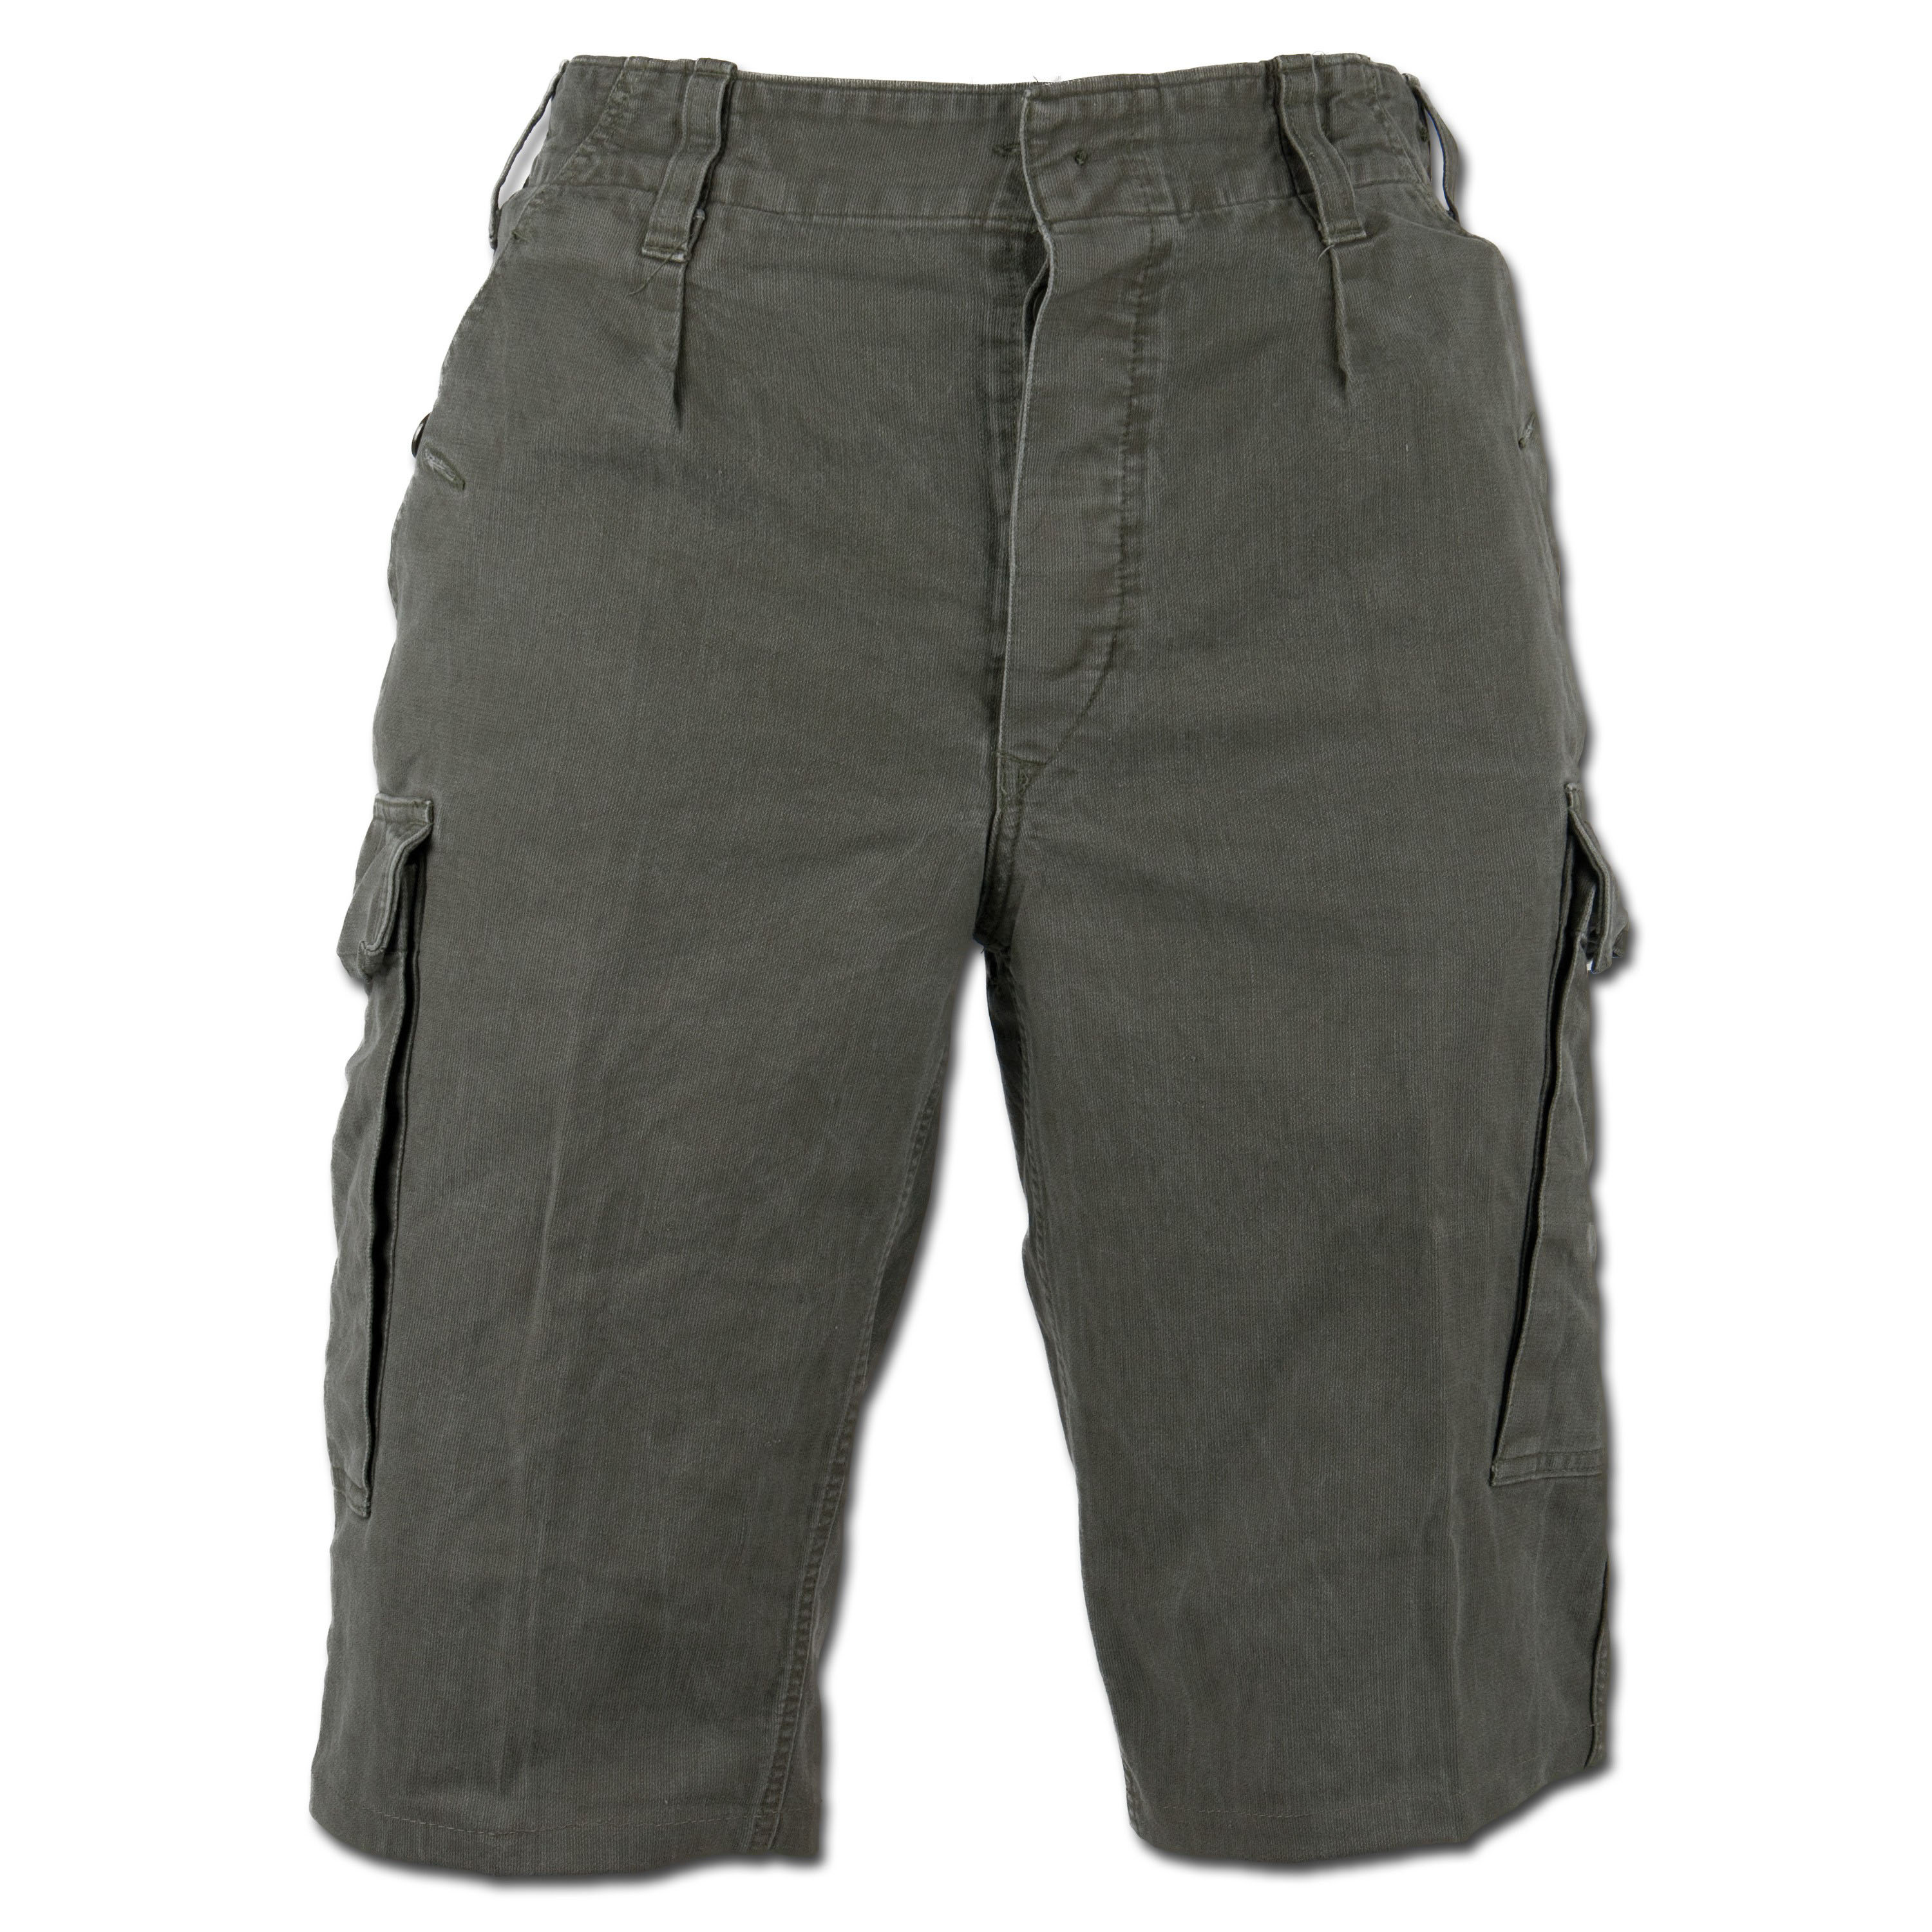 BW Shorts olive used | BW Shorts olive used | Shorts | Men | Clothing